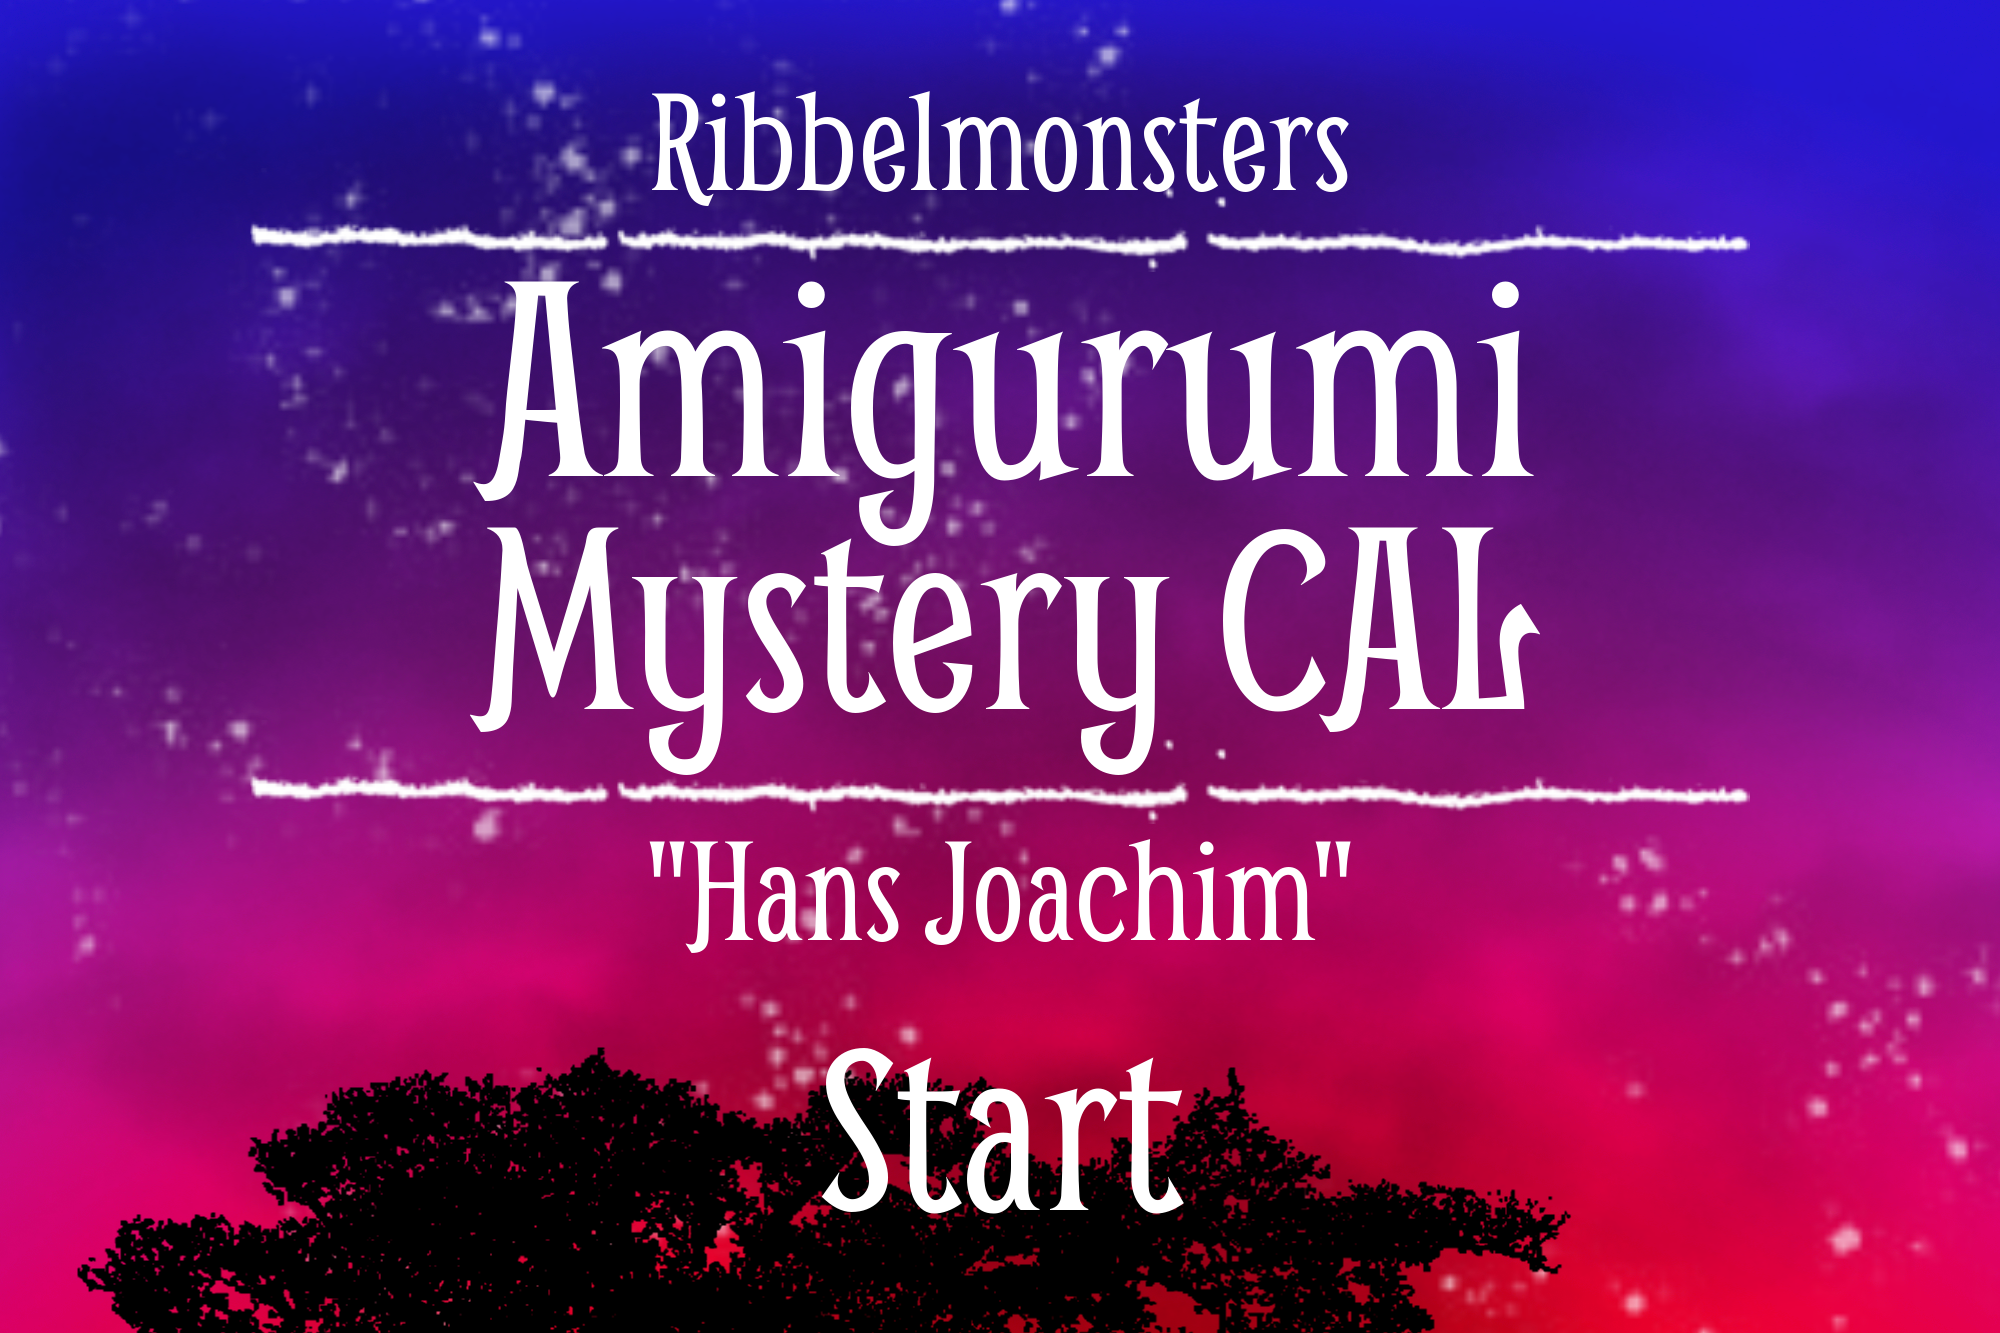 Amigurumi Mystery CAL – “Hans Joachim”